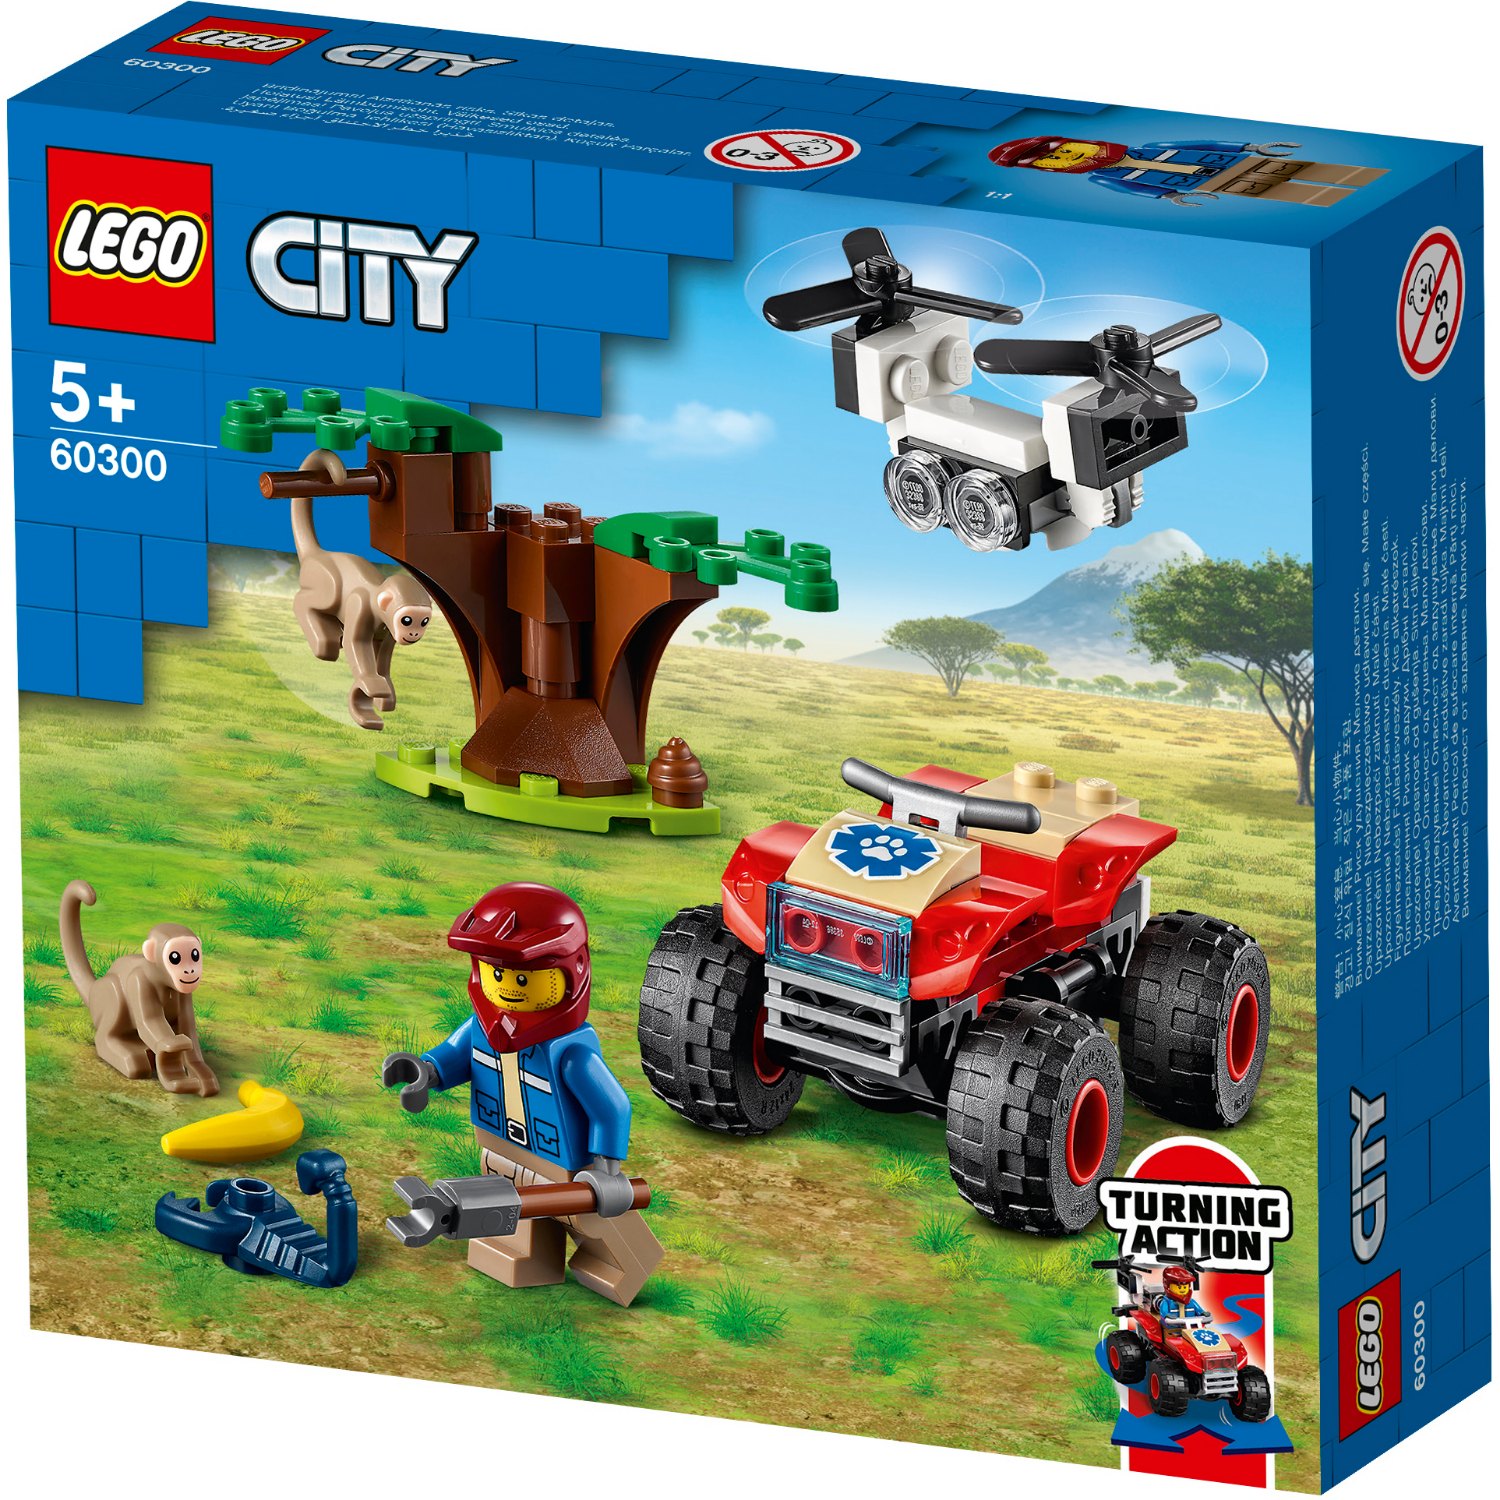 LEGO CITY 60300 WILDLIFE